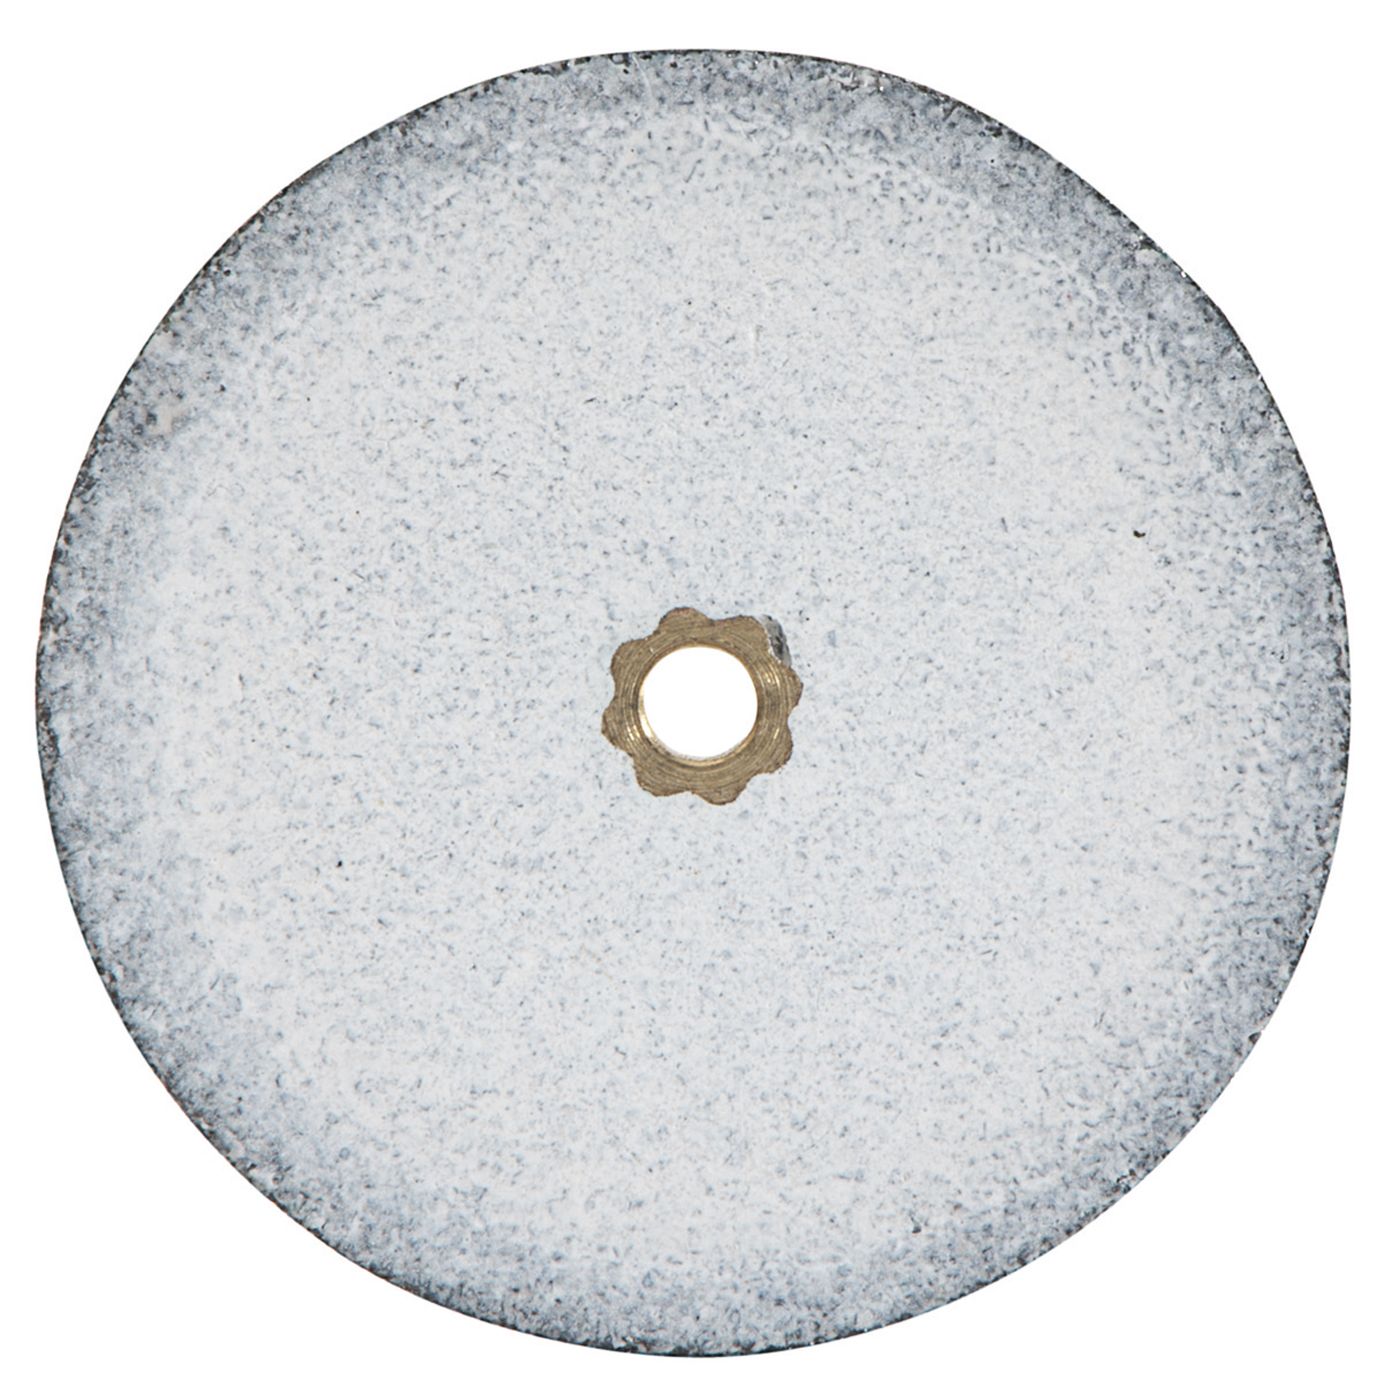 Heatless Grinding Discs, ø 22 x 3 mm - 50 pieces